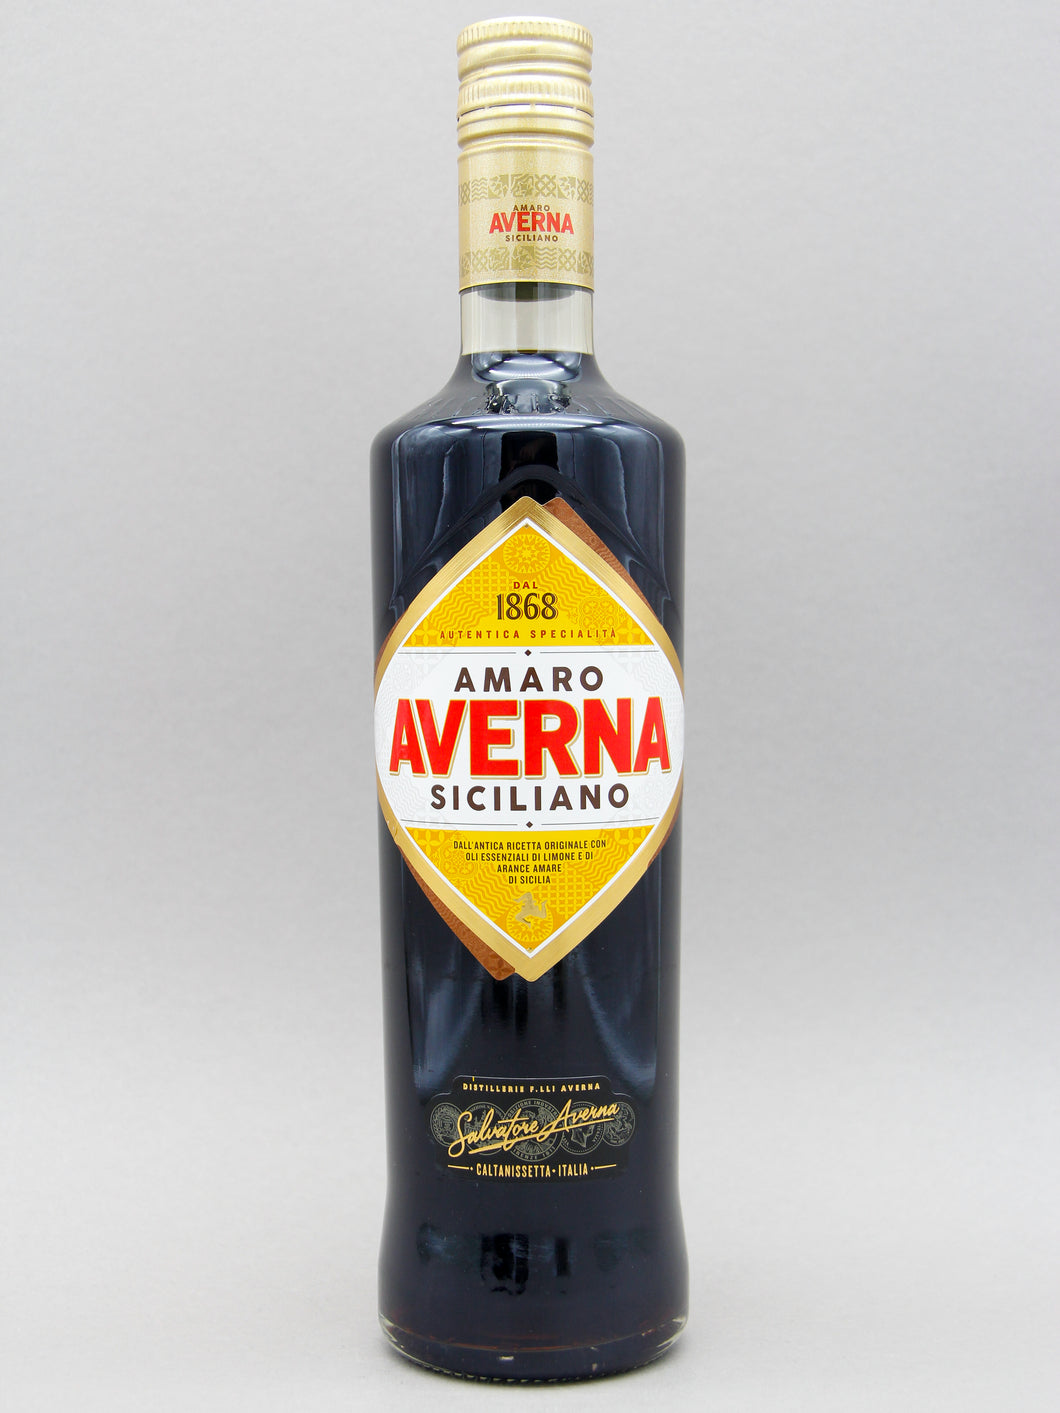 Averna Amaro Siciliano, Italy (29%, 70cl)